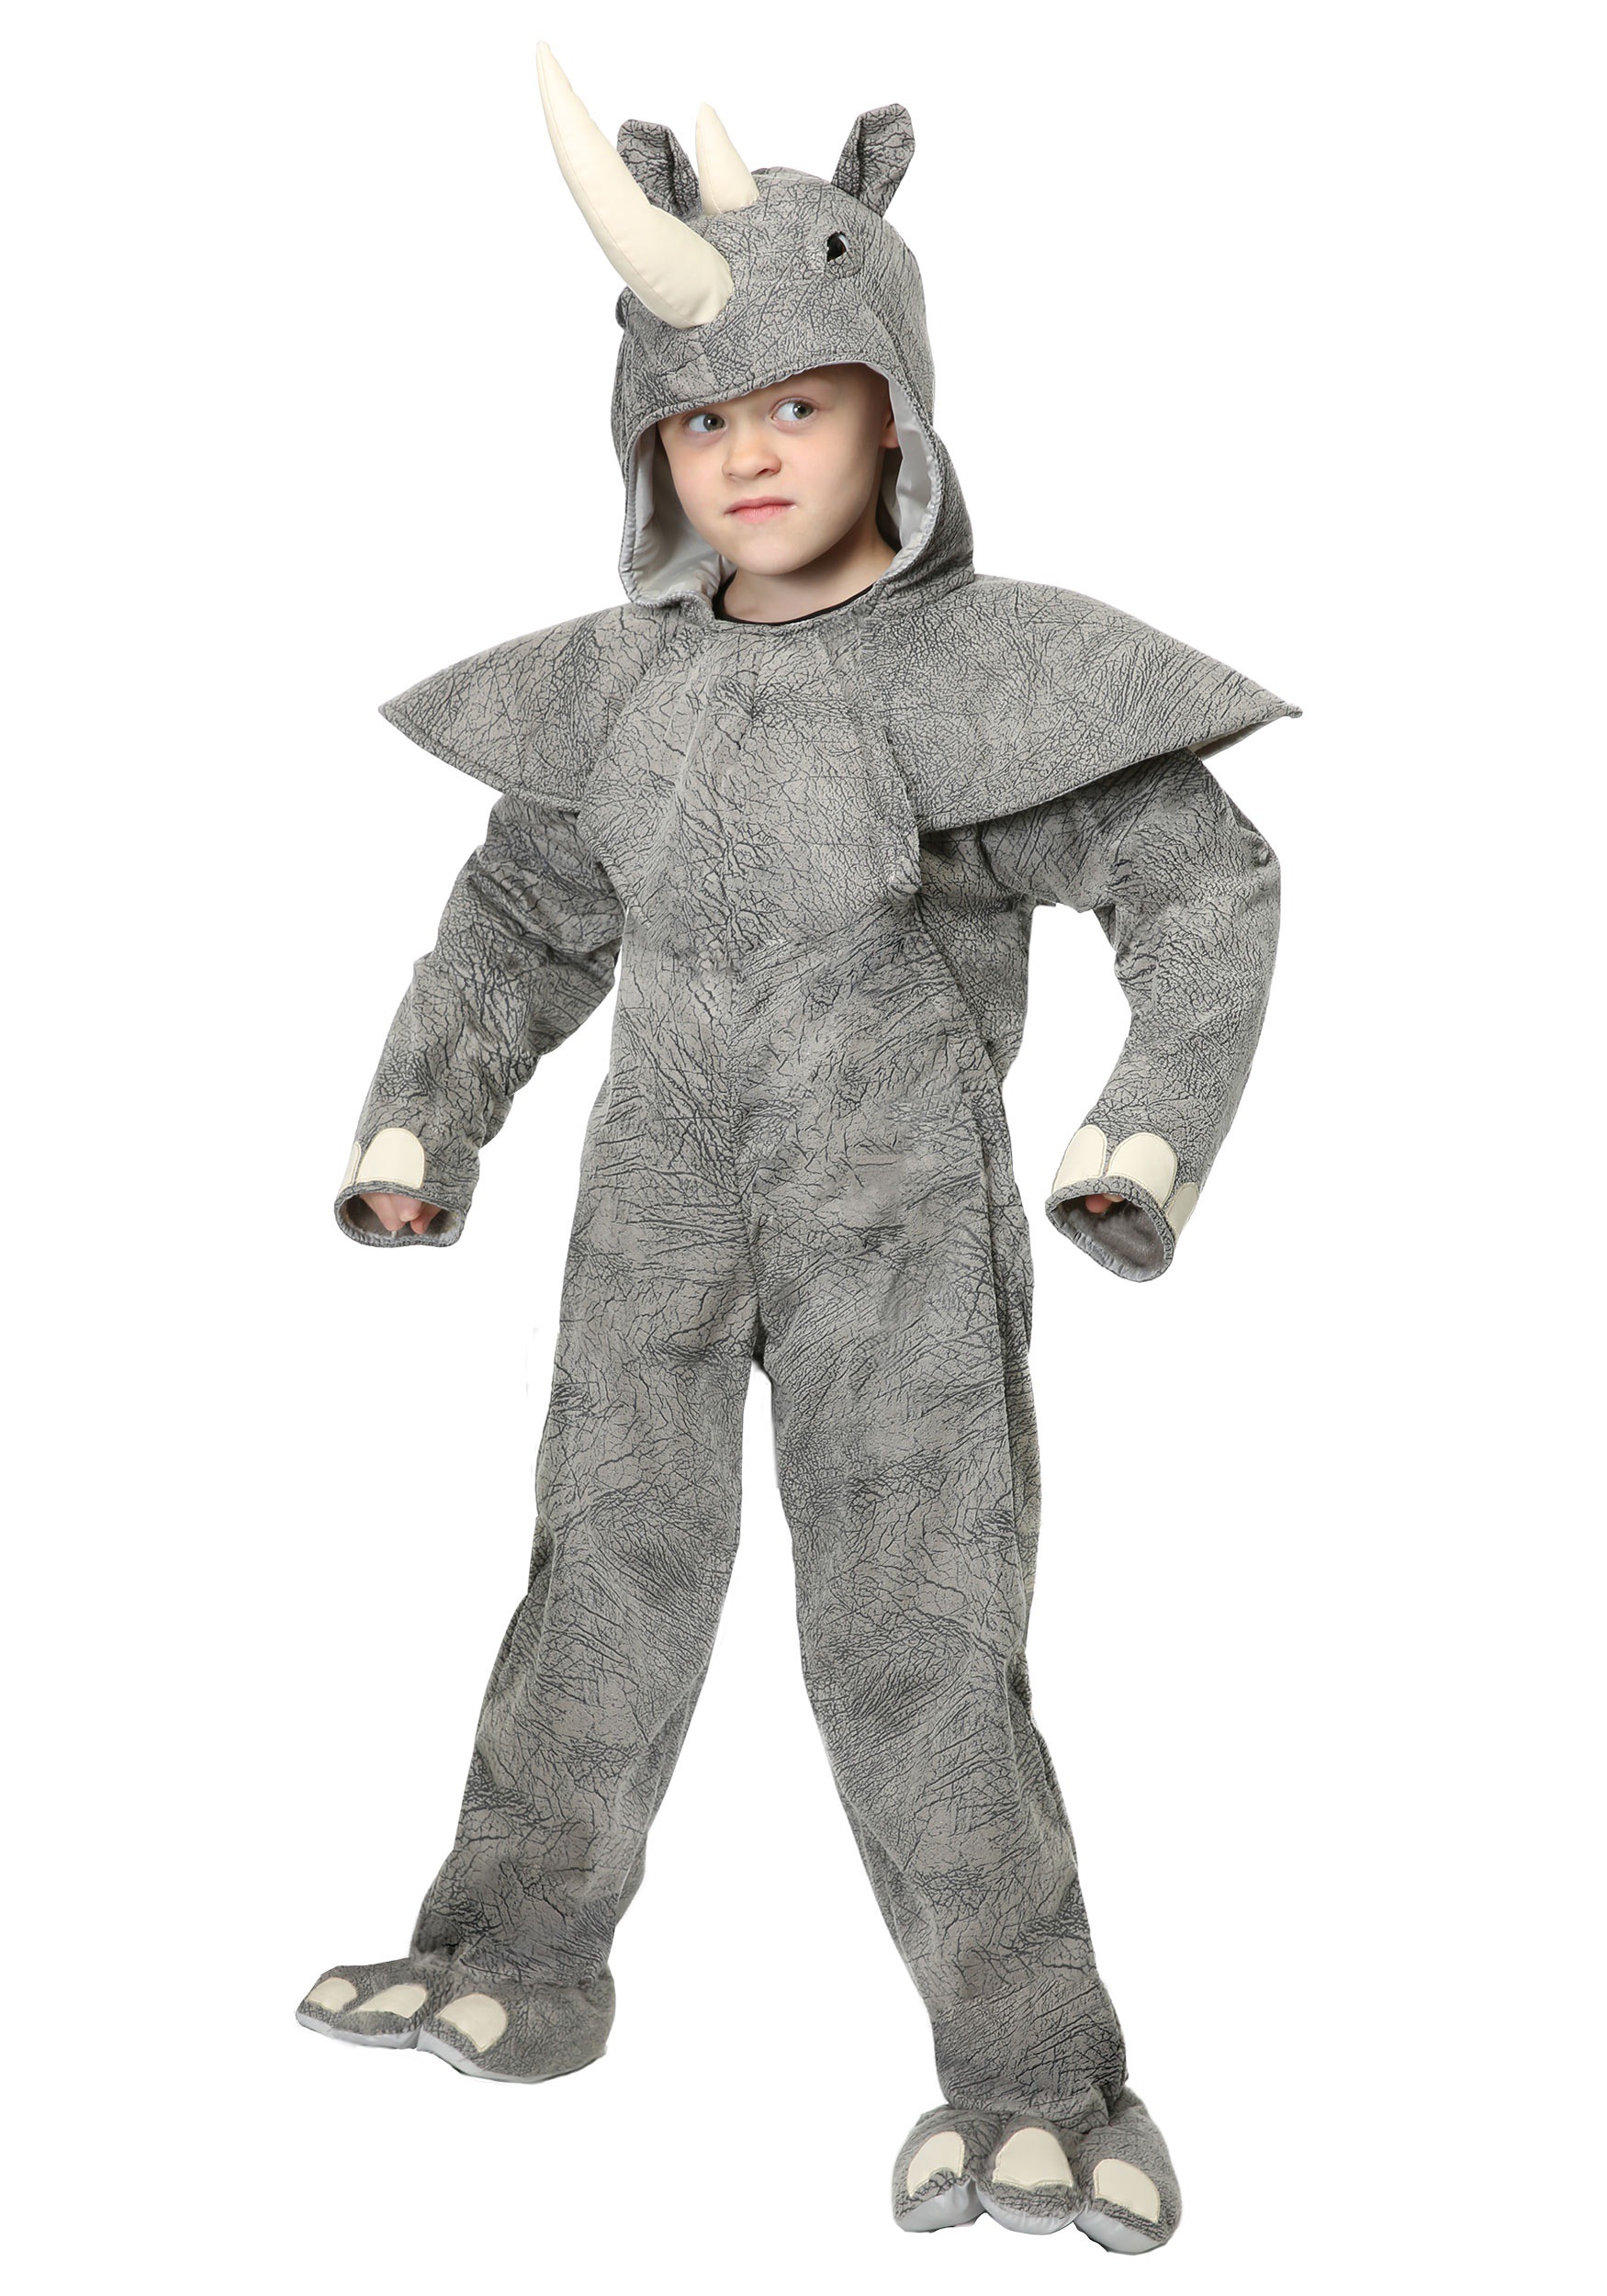 Rhino Costume for Child